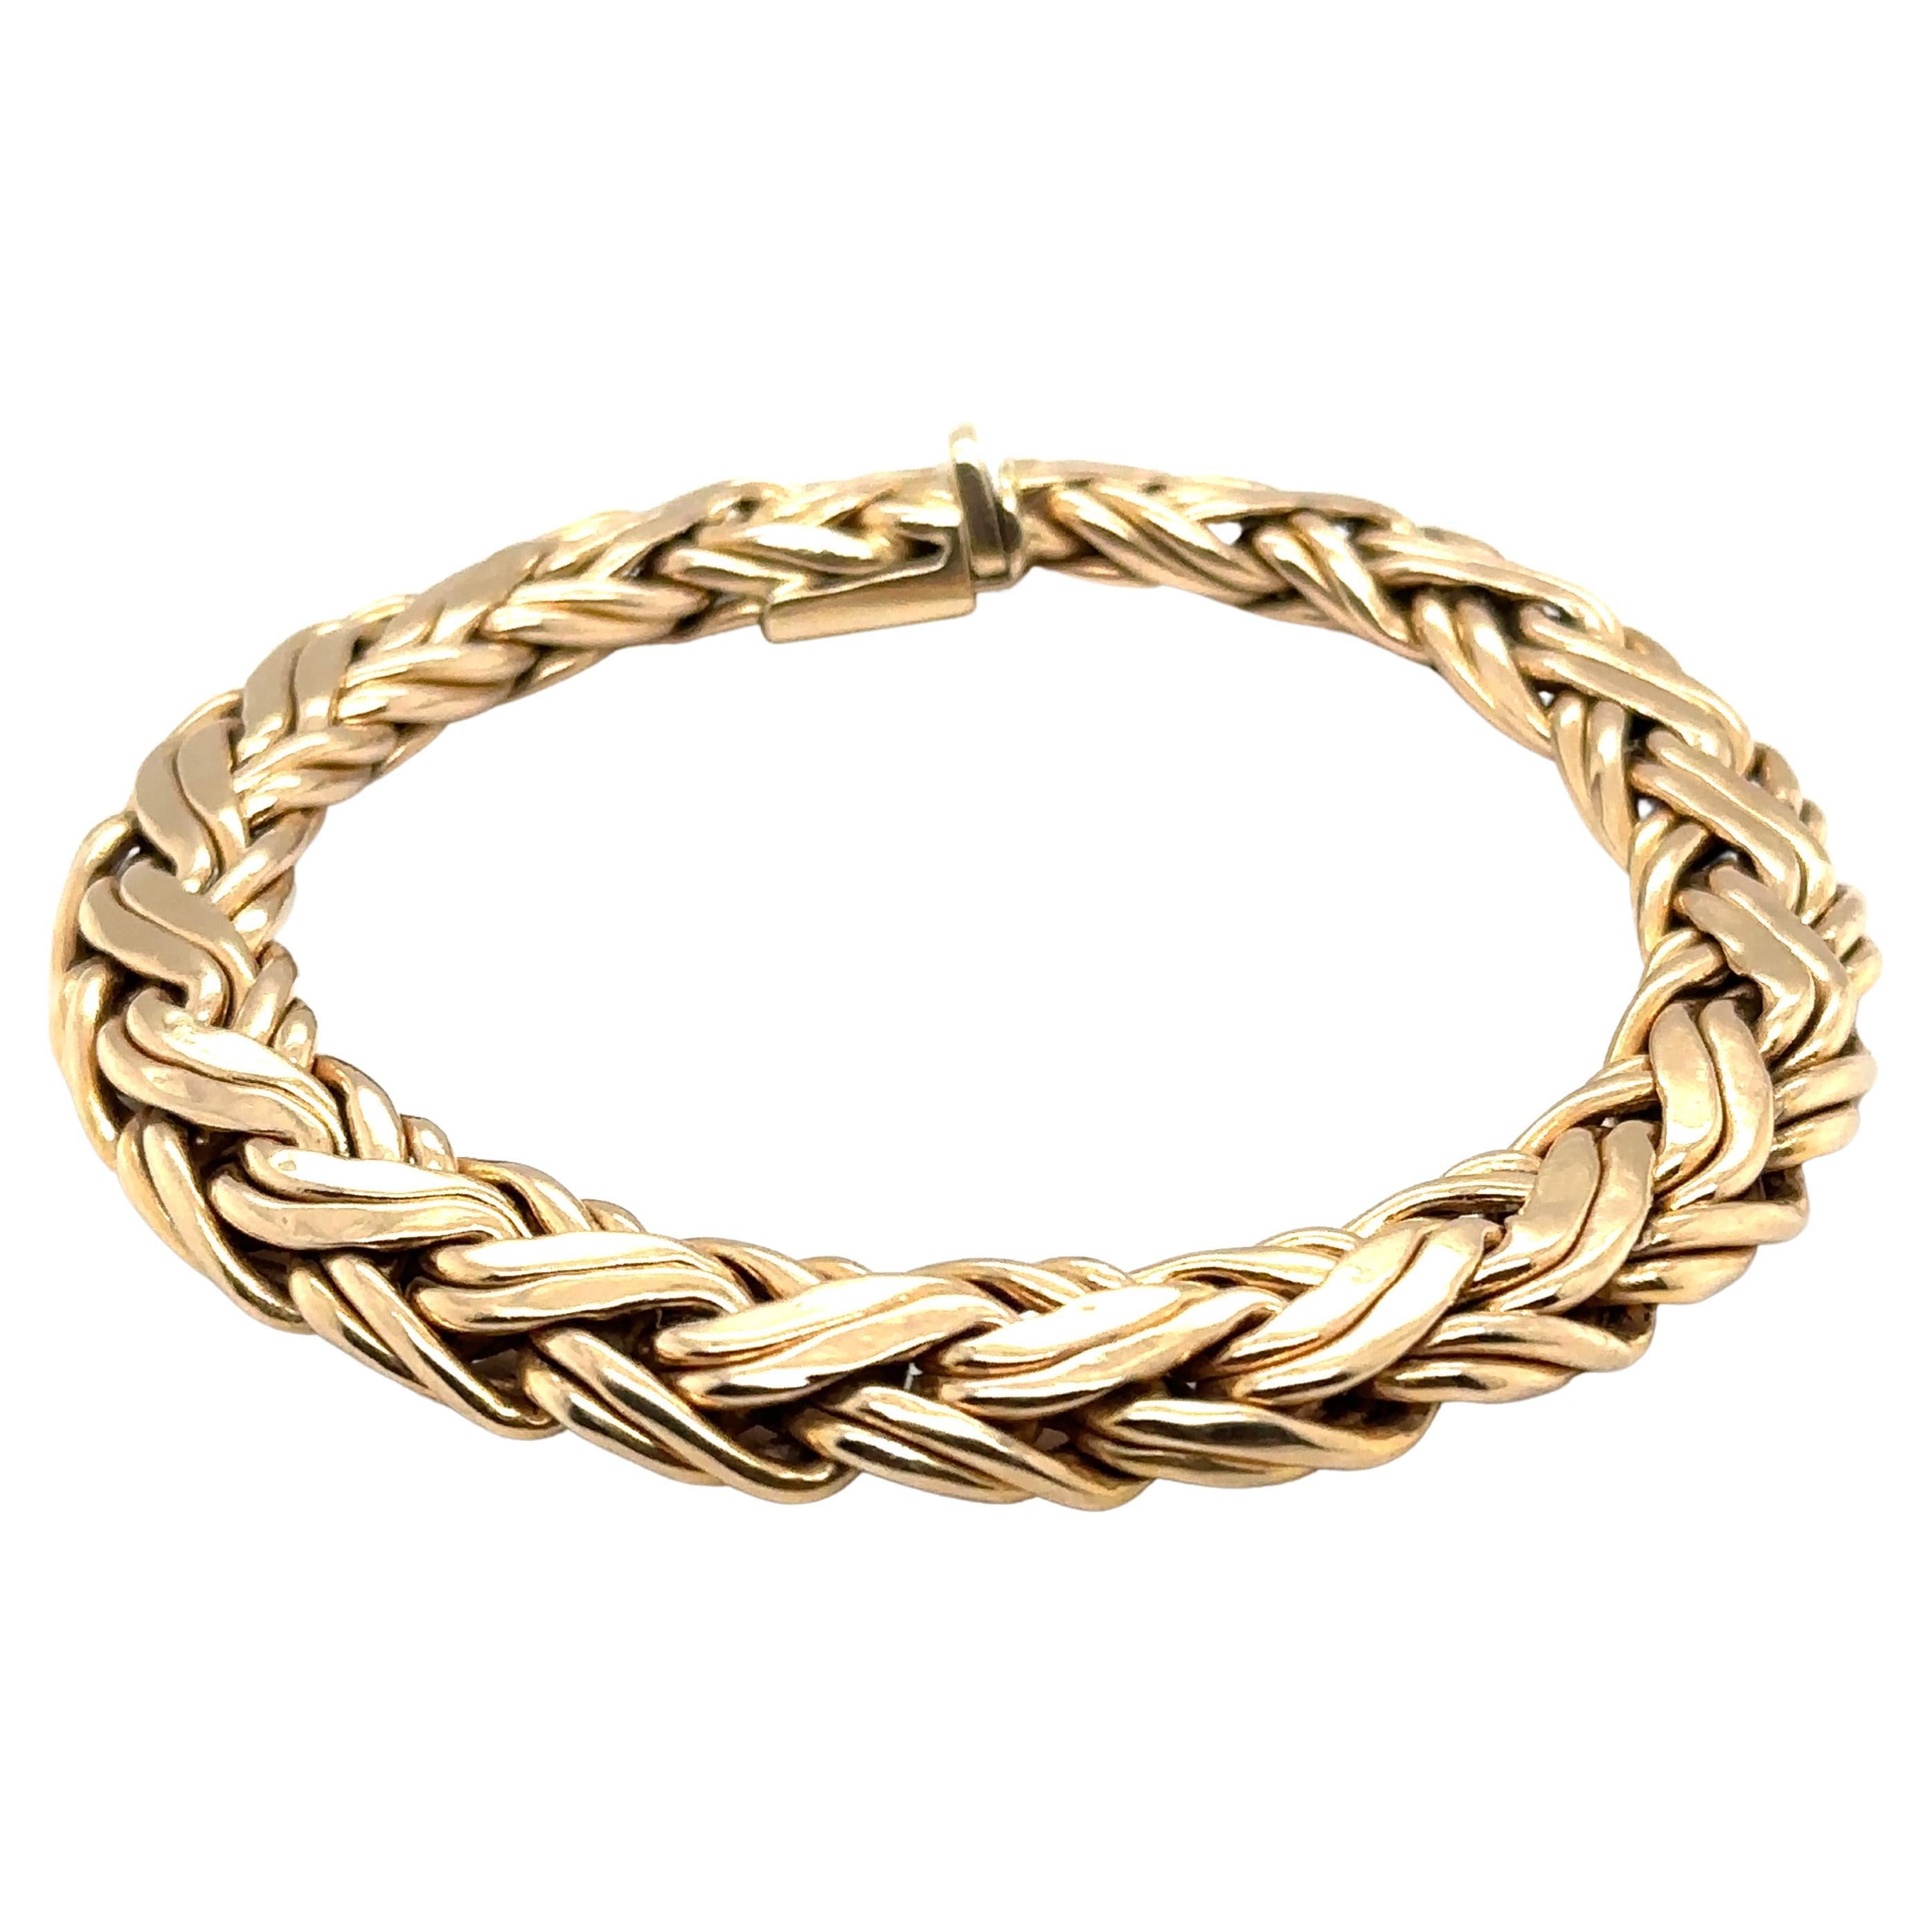 Tiffany & Co. Byzantine Chain Bracelet in 14 Karat Yellow Gold